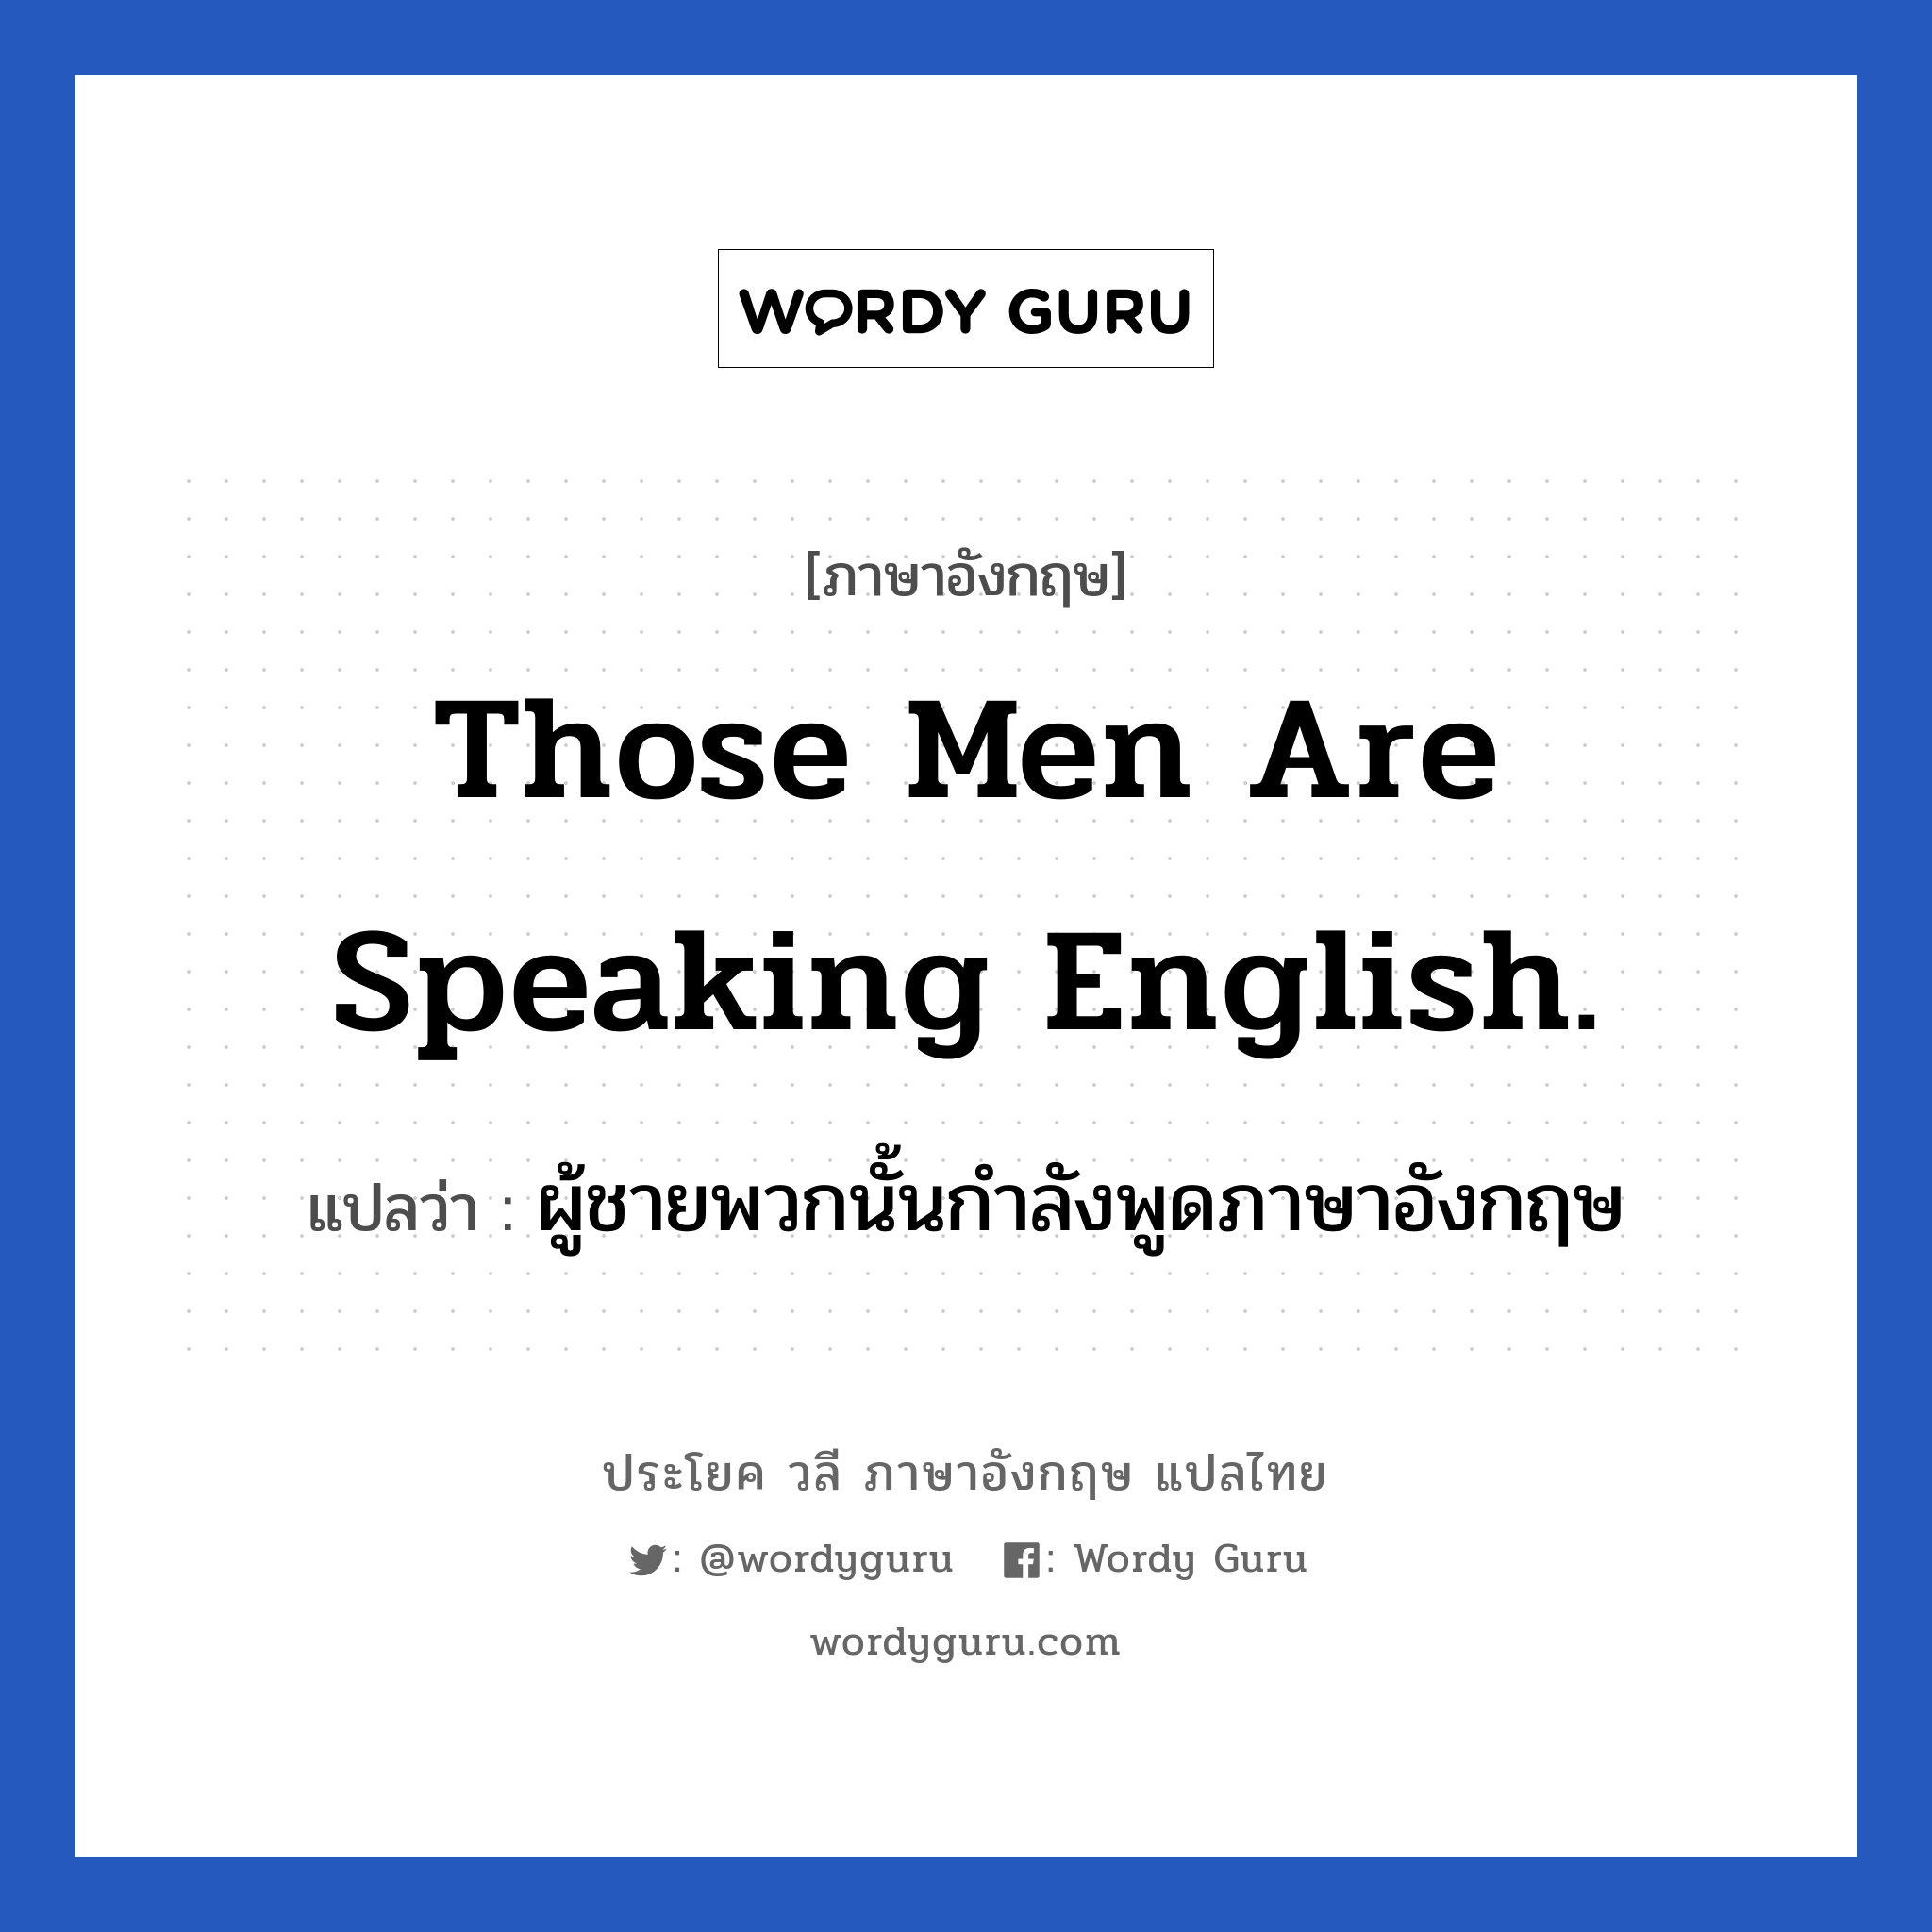 ผู้ชายพวกนั้นกำลังพูดภาษาอังกฤษ ภาษาอังกฤษ?, วลีภาษาอังกฤษ ผู้ชายพวกนั้นกำลังพูดภาษาอังกฤษ แปลว่า Those men are speaking English.